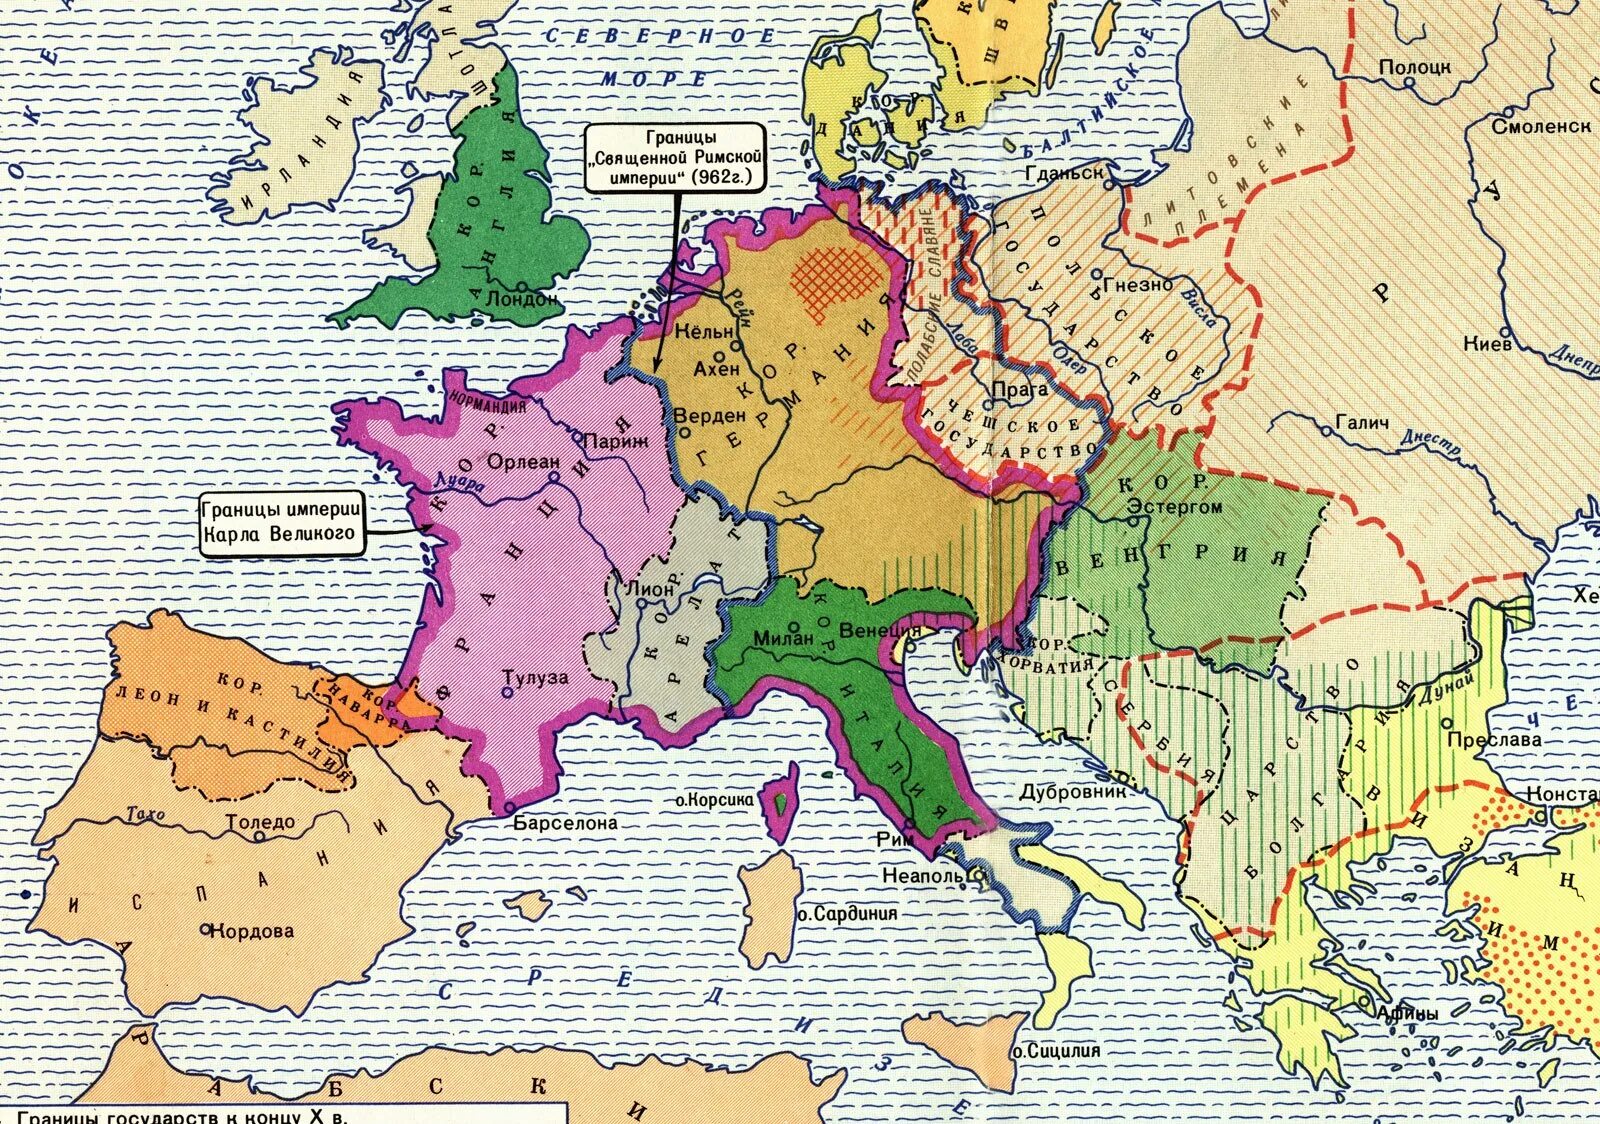 Города республики в европе в средние века. Карта Европы в средние века 10 век. Западная Европа 10 век карта. Карта средневековой Европы 9-11 веков. Карта Европы средневековья 10 век.